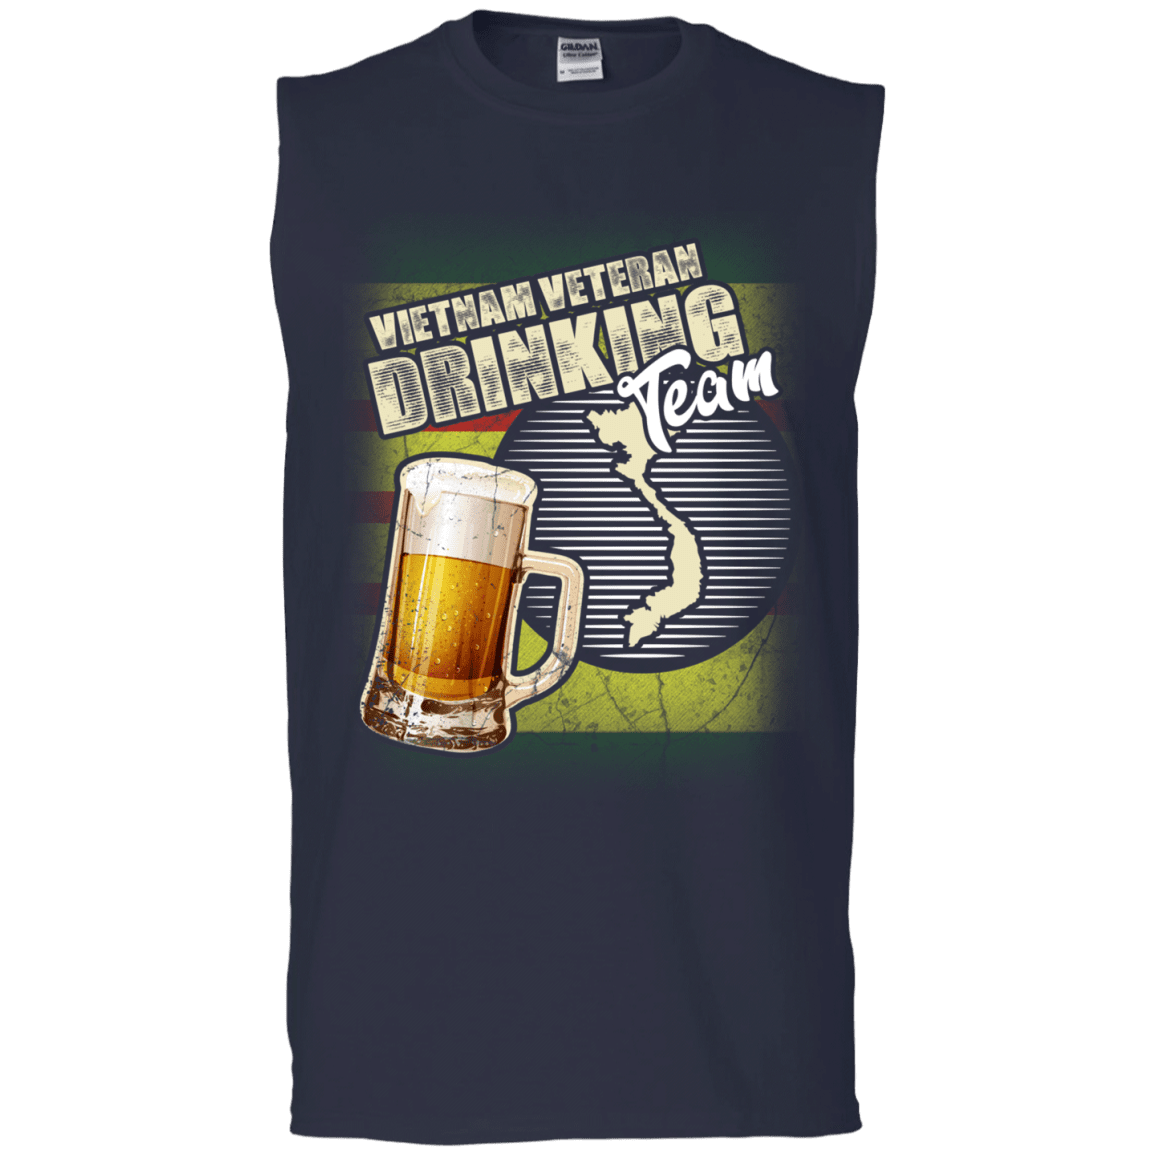 Military T-Shirt "Vietnam Veteran Drinking Beer Team" Front-TShirt-General-Veterans Nation